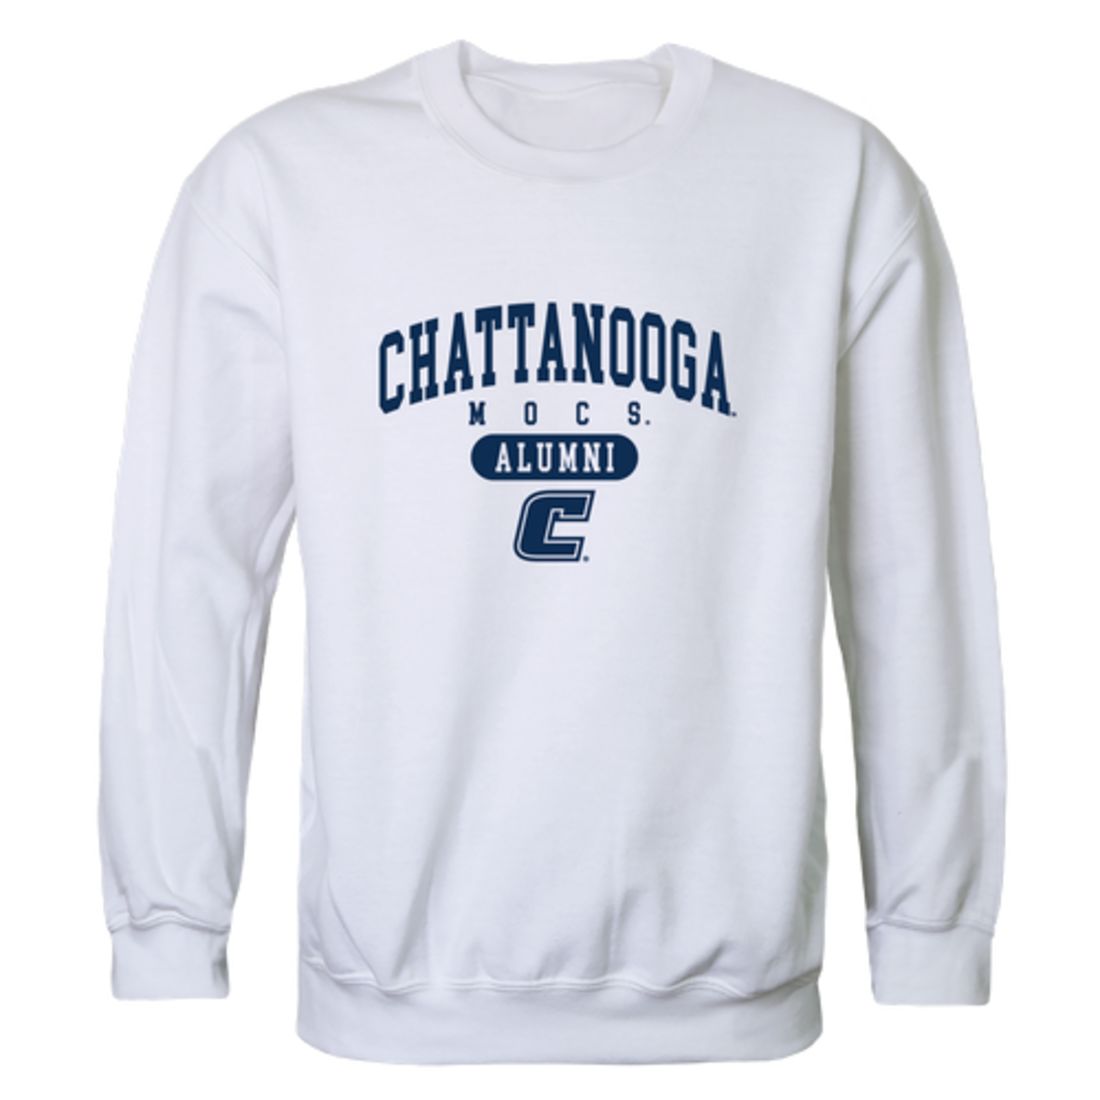 University of Tennessee at Chattanooga (UTC) MOCS Alumni Crewneck Sweatshirt